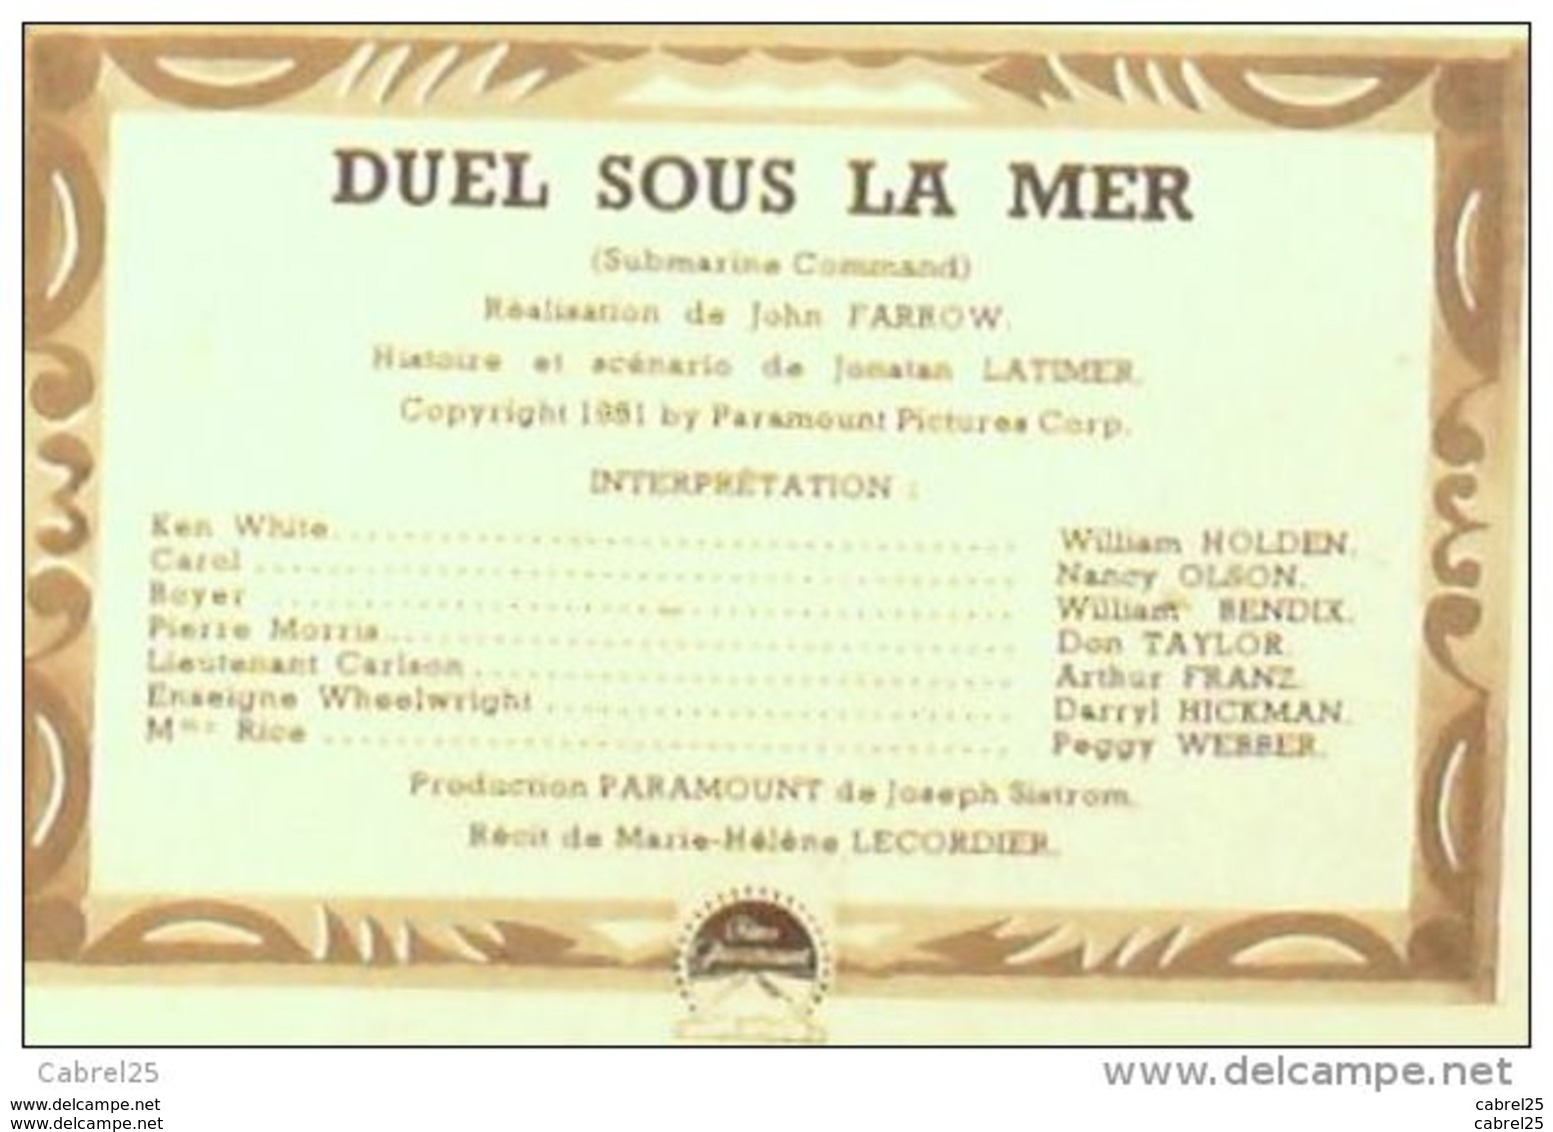 CINEMA-DUEL SOUS La MER-WILLIAM HOLDEN-NANCY OLSON-PEGGY WEBBER-MF 330-1952 - Cinema